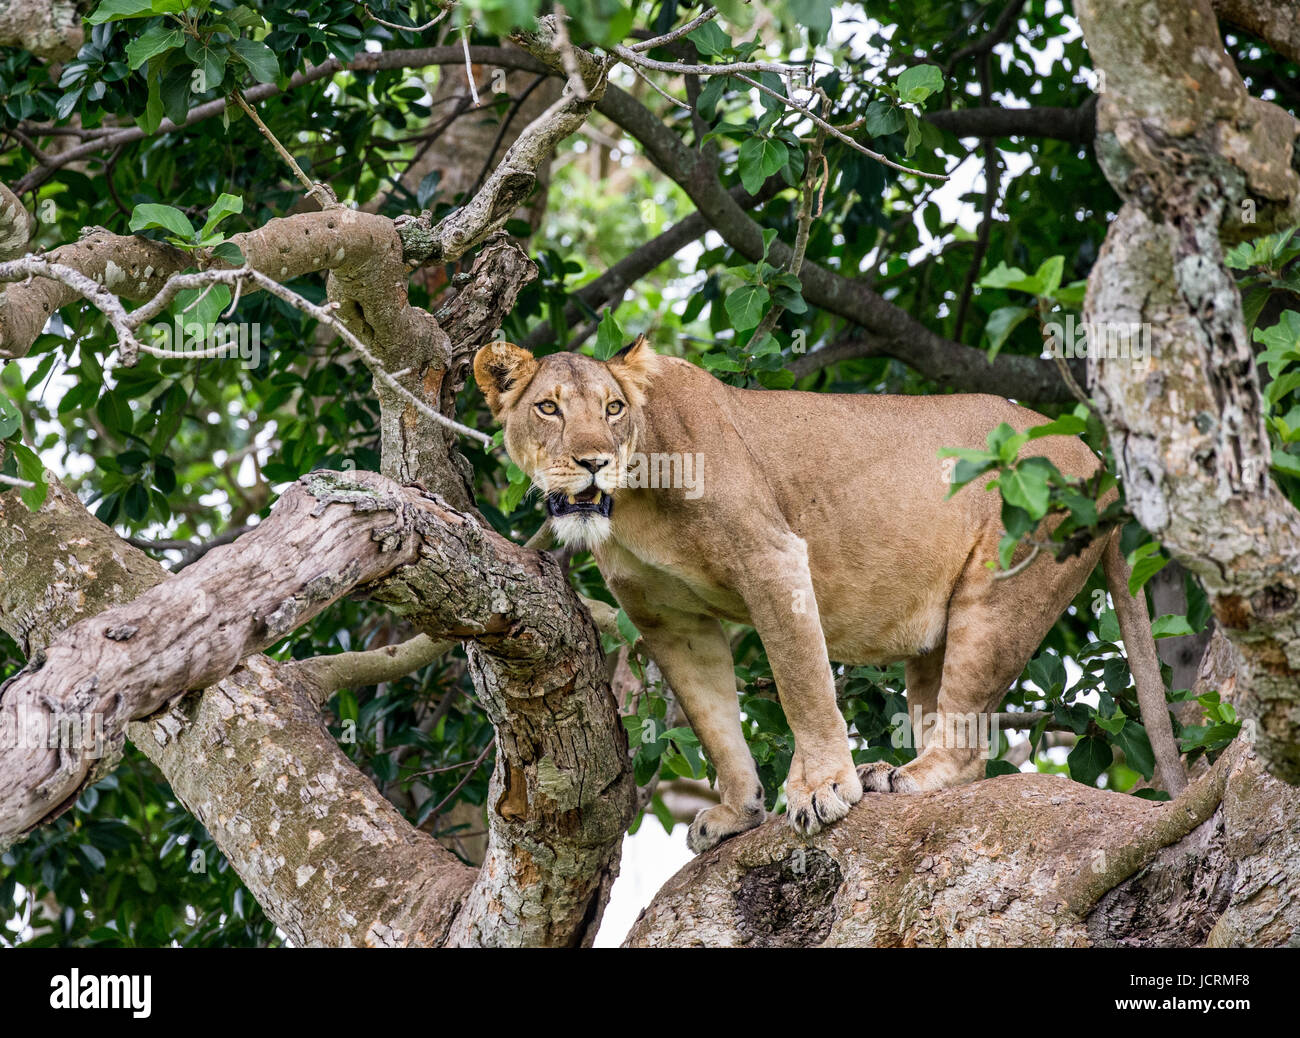 Lionne sur un grand arbre. Gros plan. Ouganda. Afrique de l'est. Banque D'Images